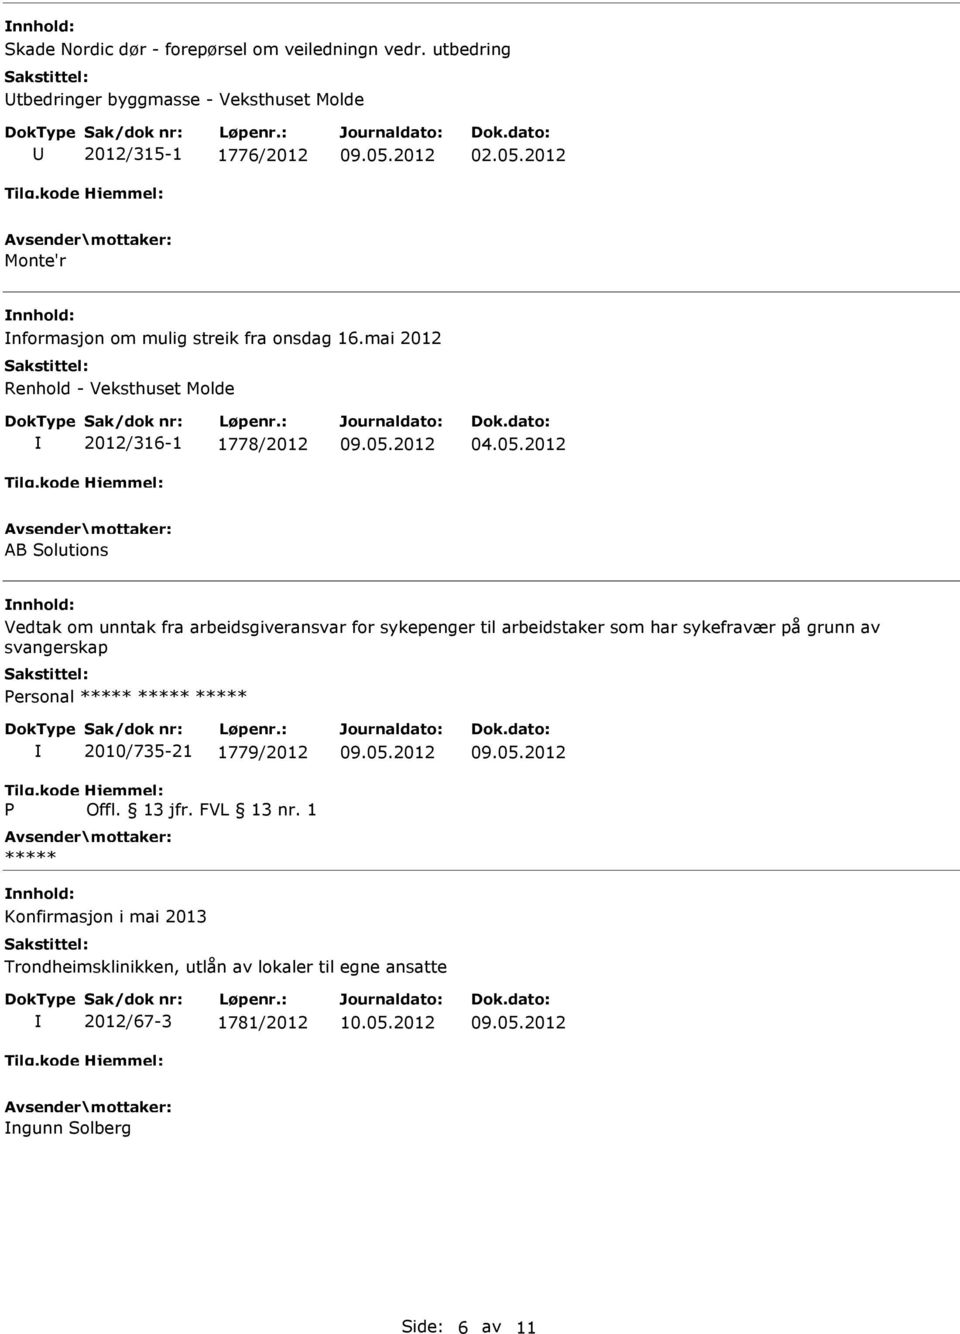 2012 AB Solutions nnhold: Vedtak om unntak fra arbeidsgiveransvar for sykepenger til arbeidstaker som har sykefravær på grunn av svangerskap